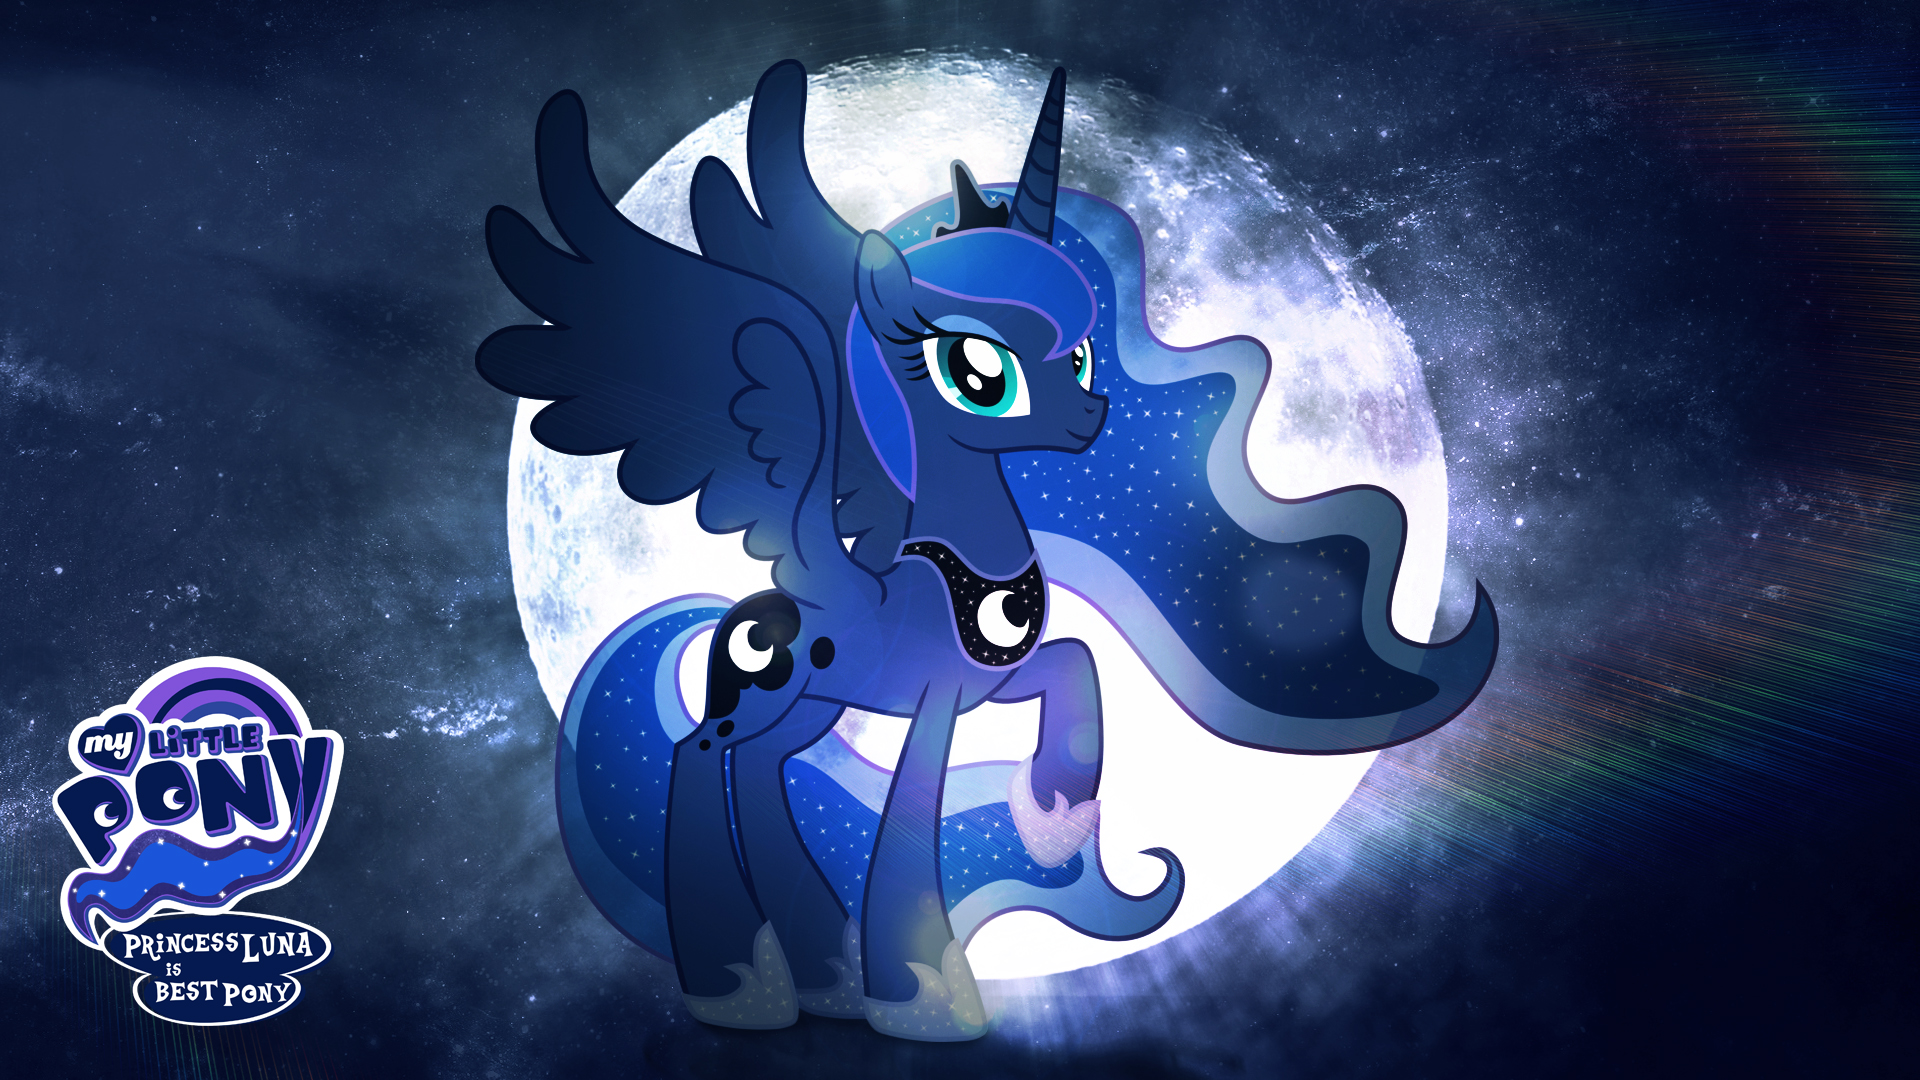 Princess Luna Is Best Pony HD Wallpaper By Jackardy